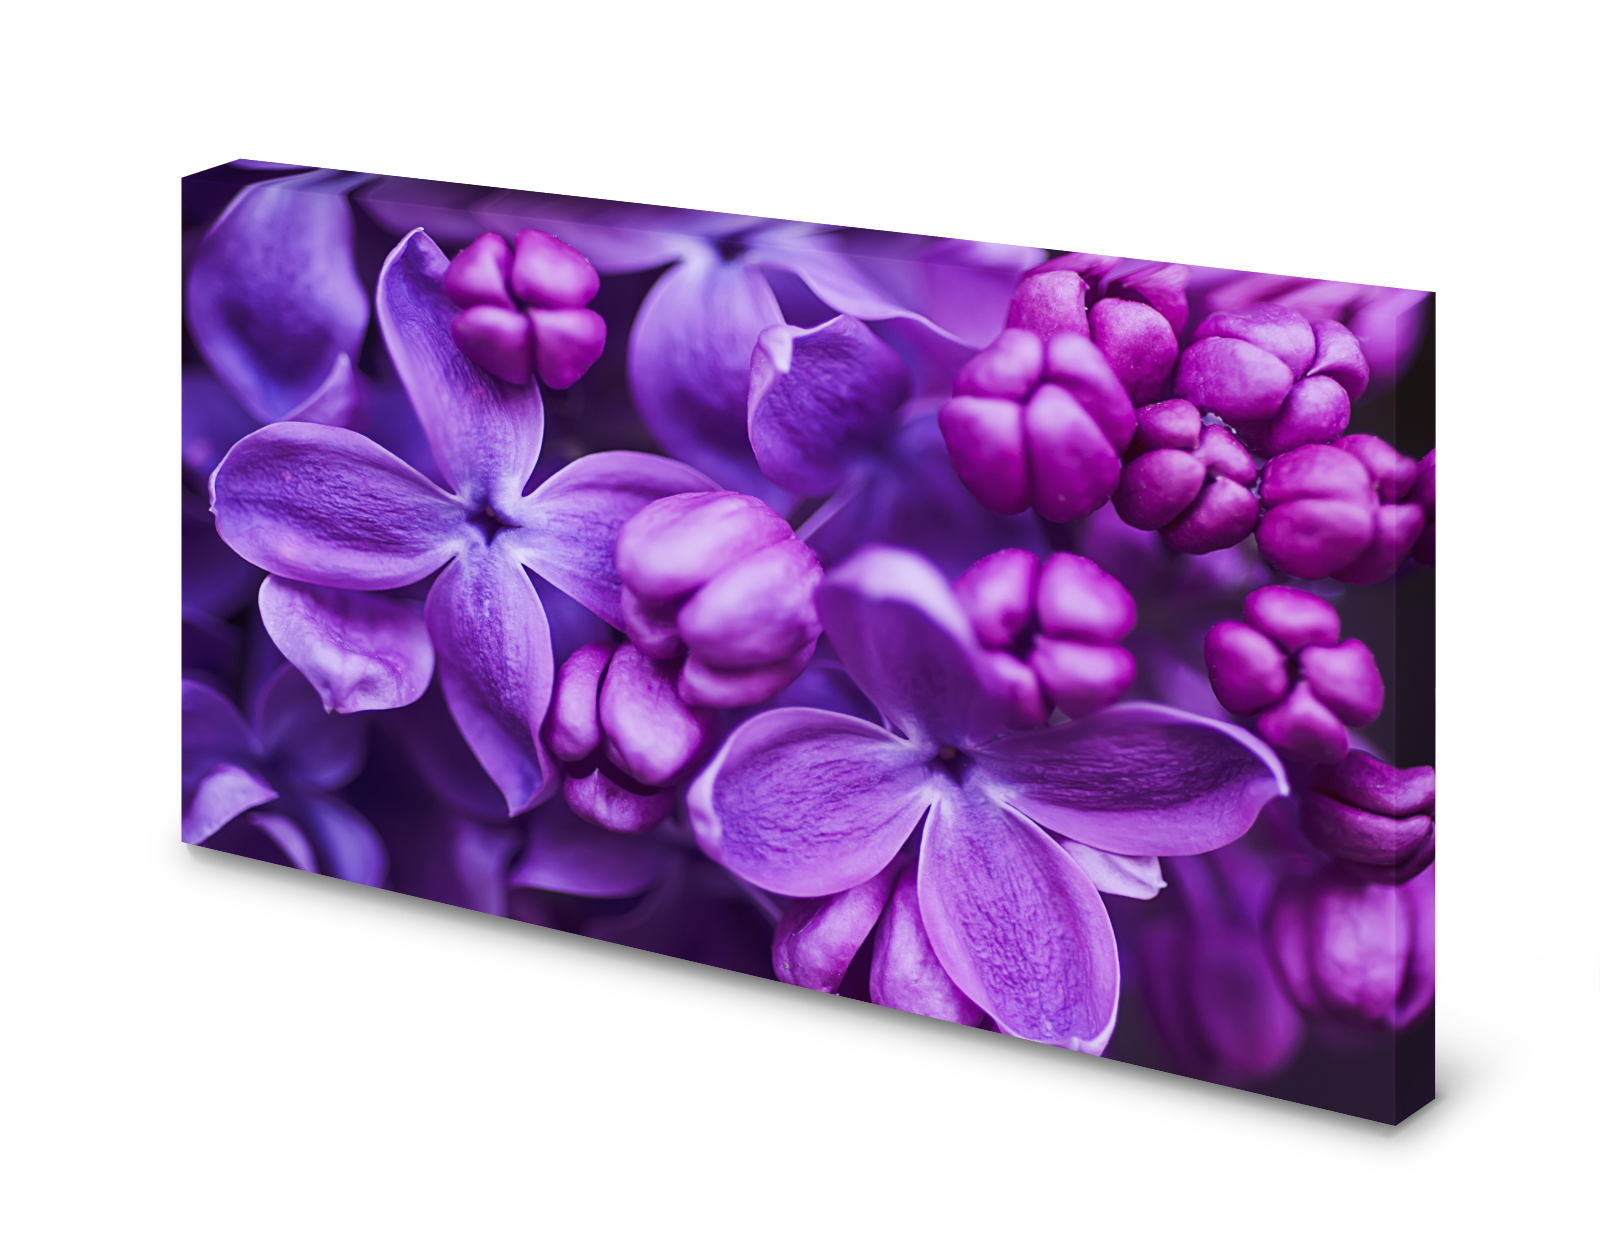 Magnettafel Pinnwand Bild Flieder lila Blumen Blumenmuster gekantet